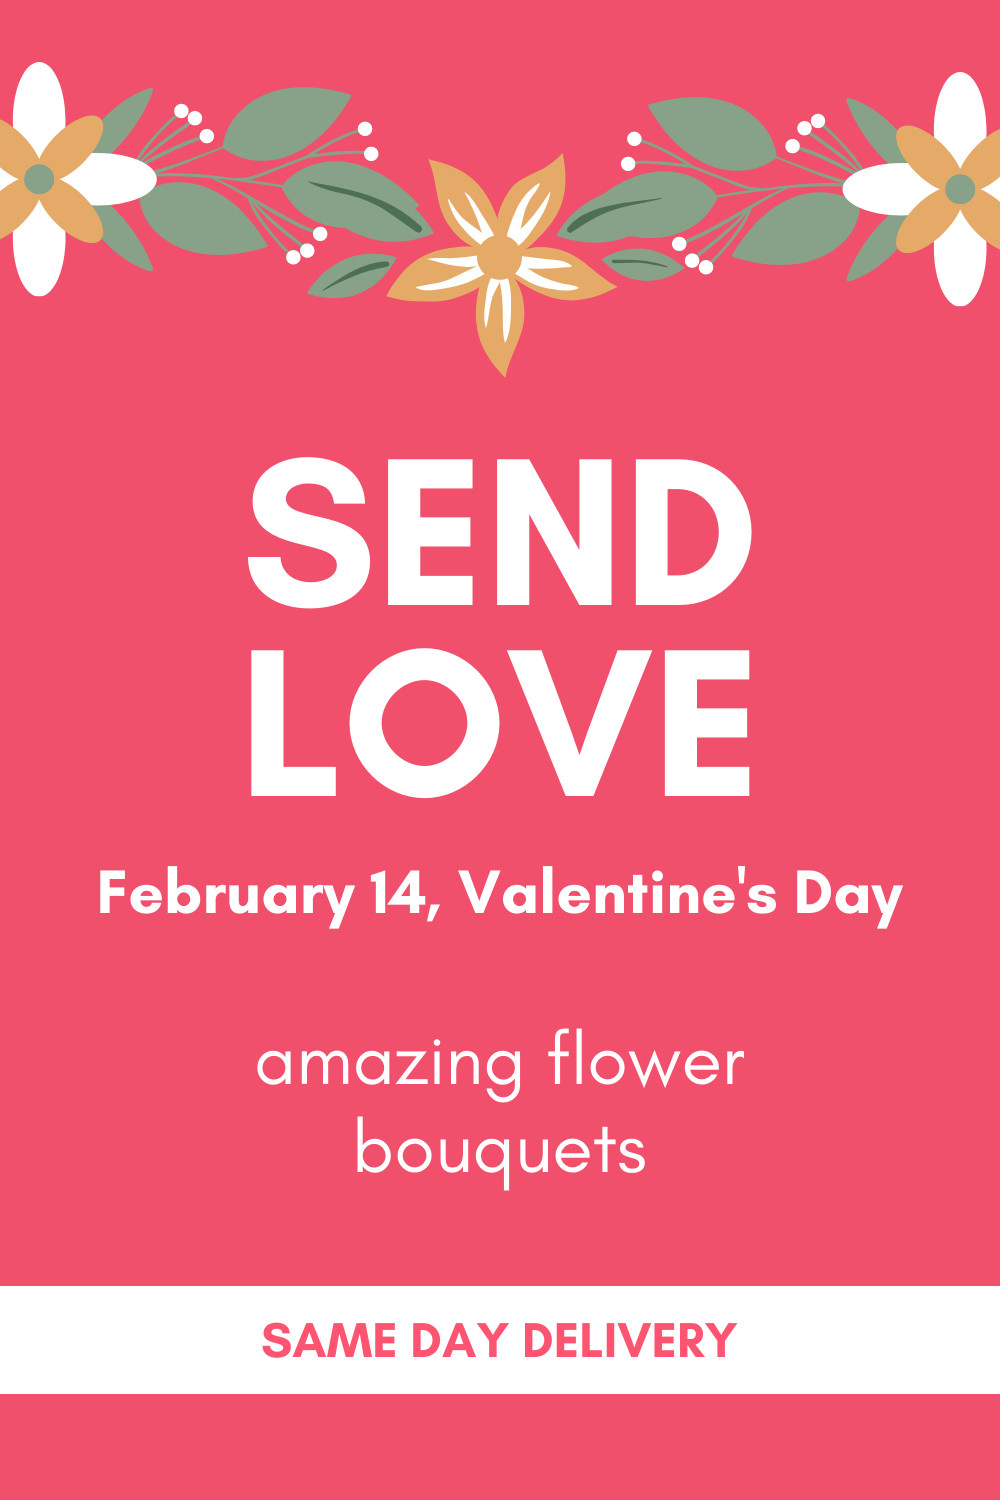 Send Valentine's Day Flower Love